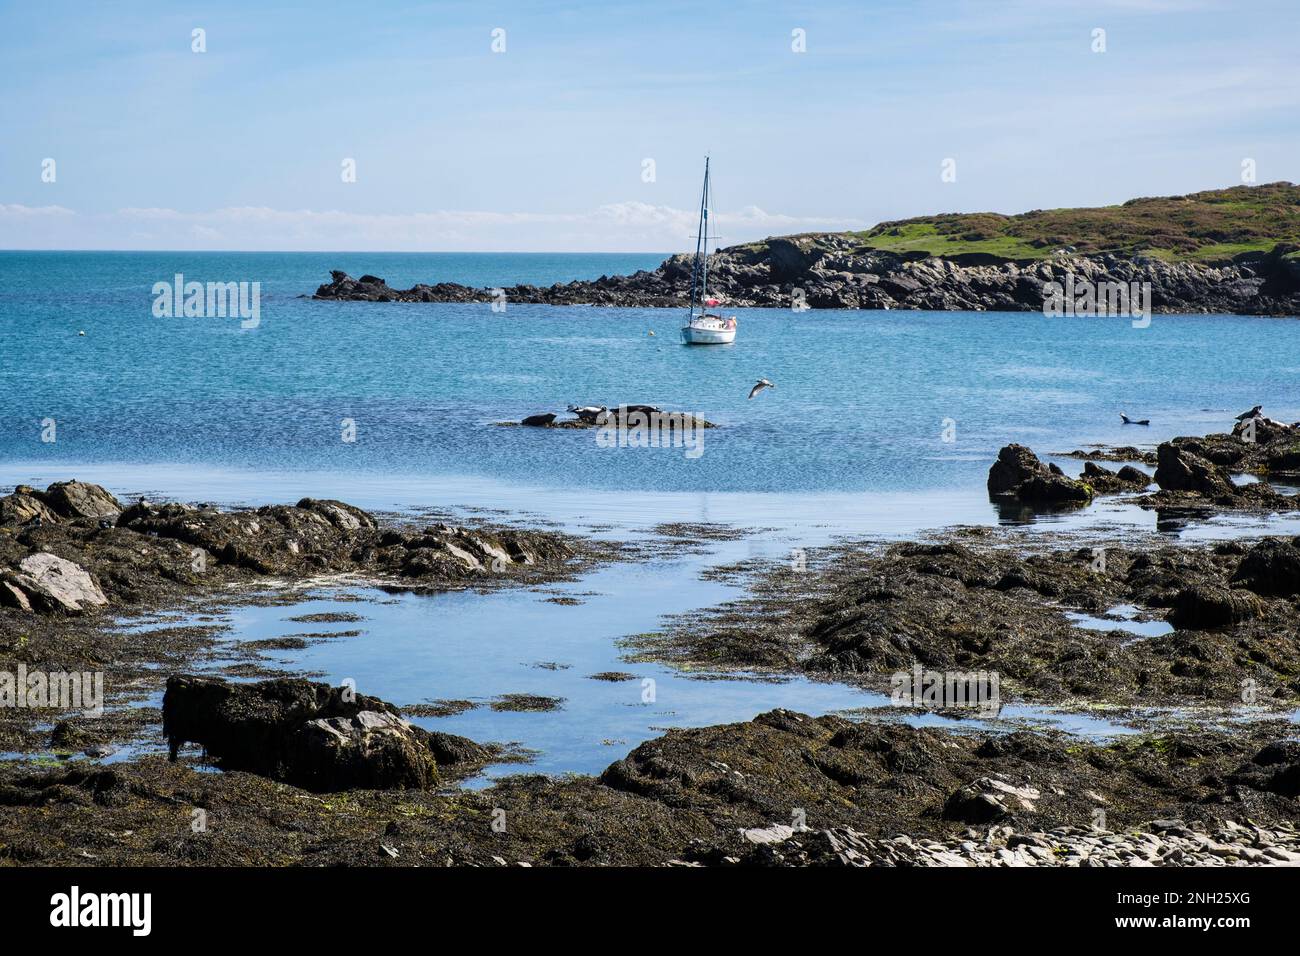 Un yate está amarrado en la bahía y las focas grises disfrutan de las rocas. Ynys Enlli o Bardsey Island, Península de Llyn, Gwynedd, norte de Gales, Reino Unido, Gran Bretaña Foto de stock